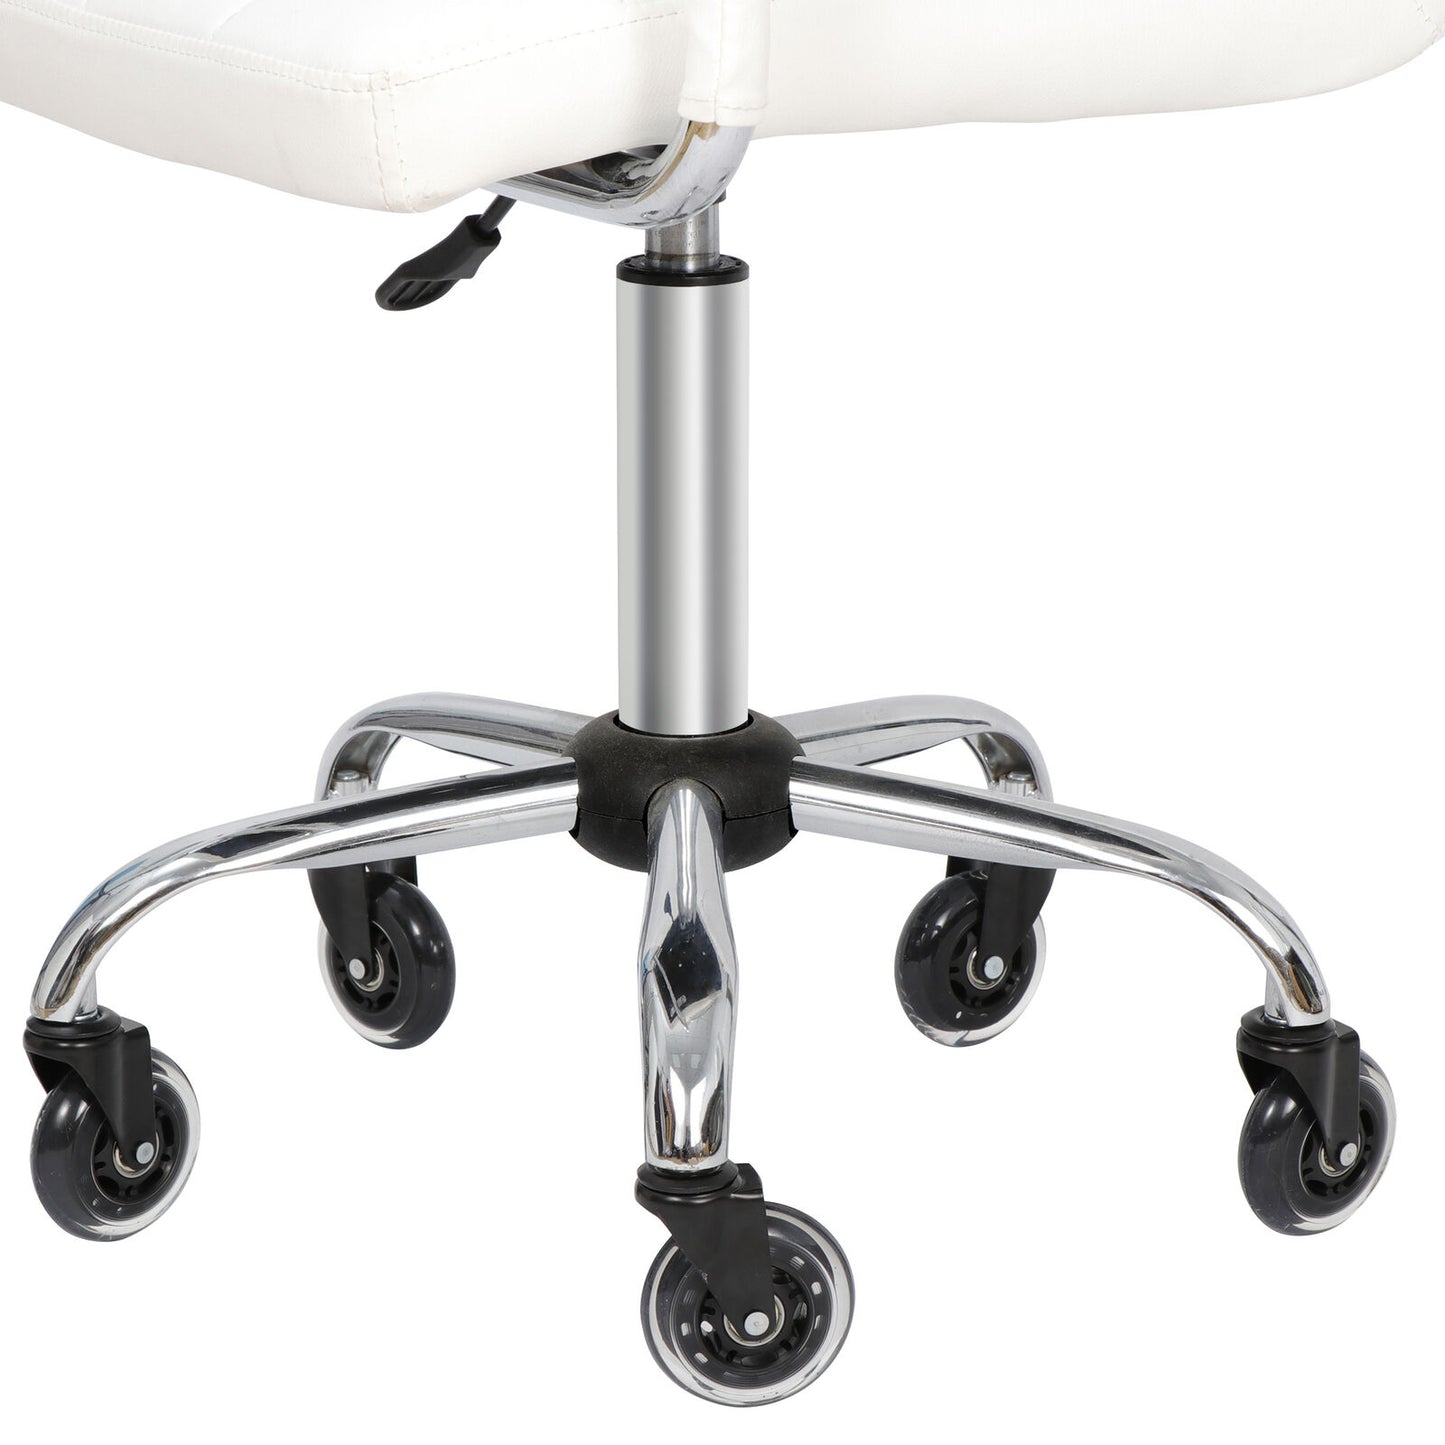 Office Chair Caster Wheels Set of 5 Heavy Duty for All Floors for Desk Floor Mat